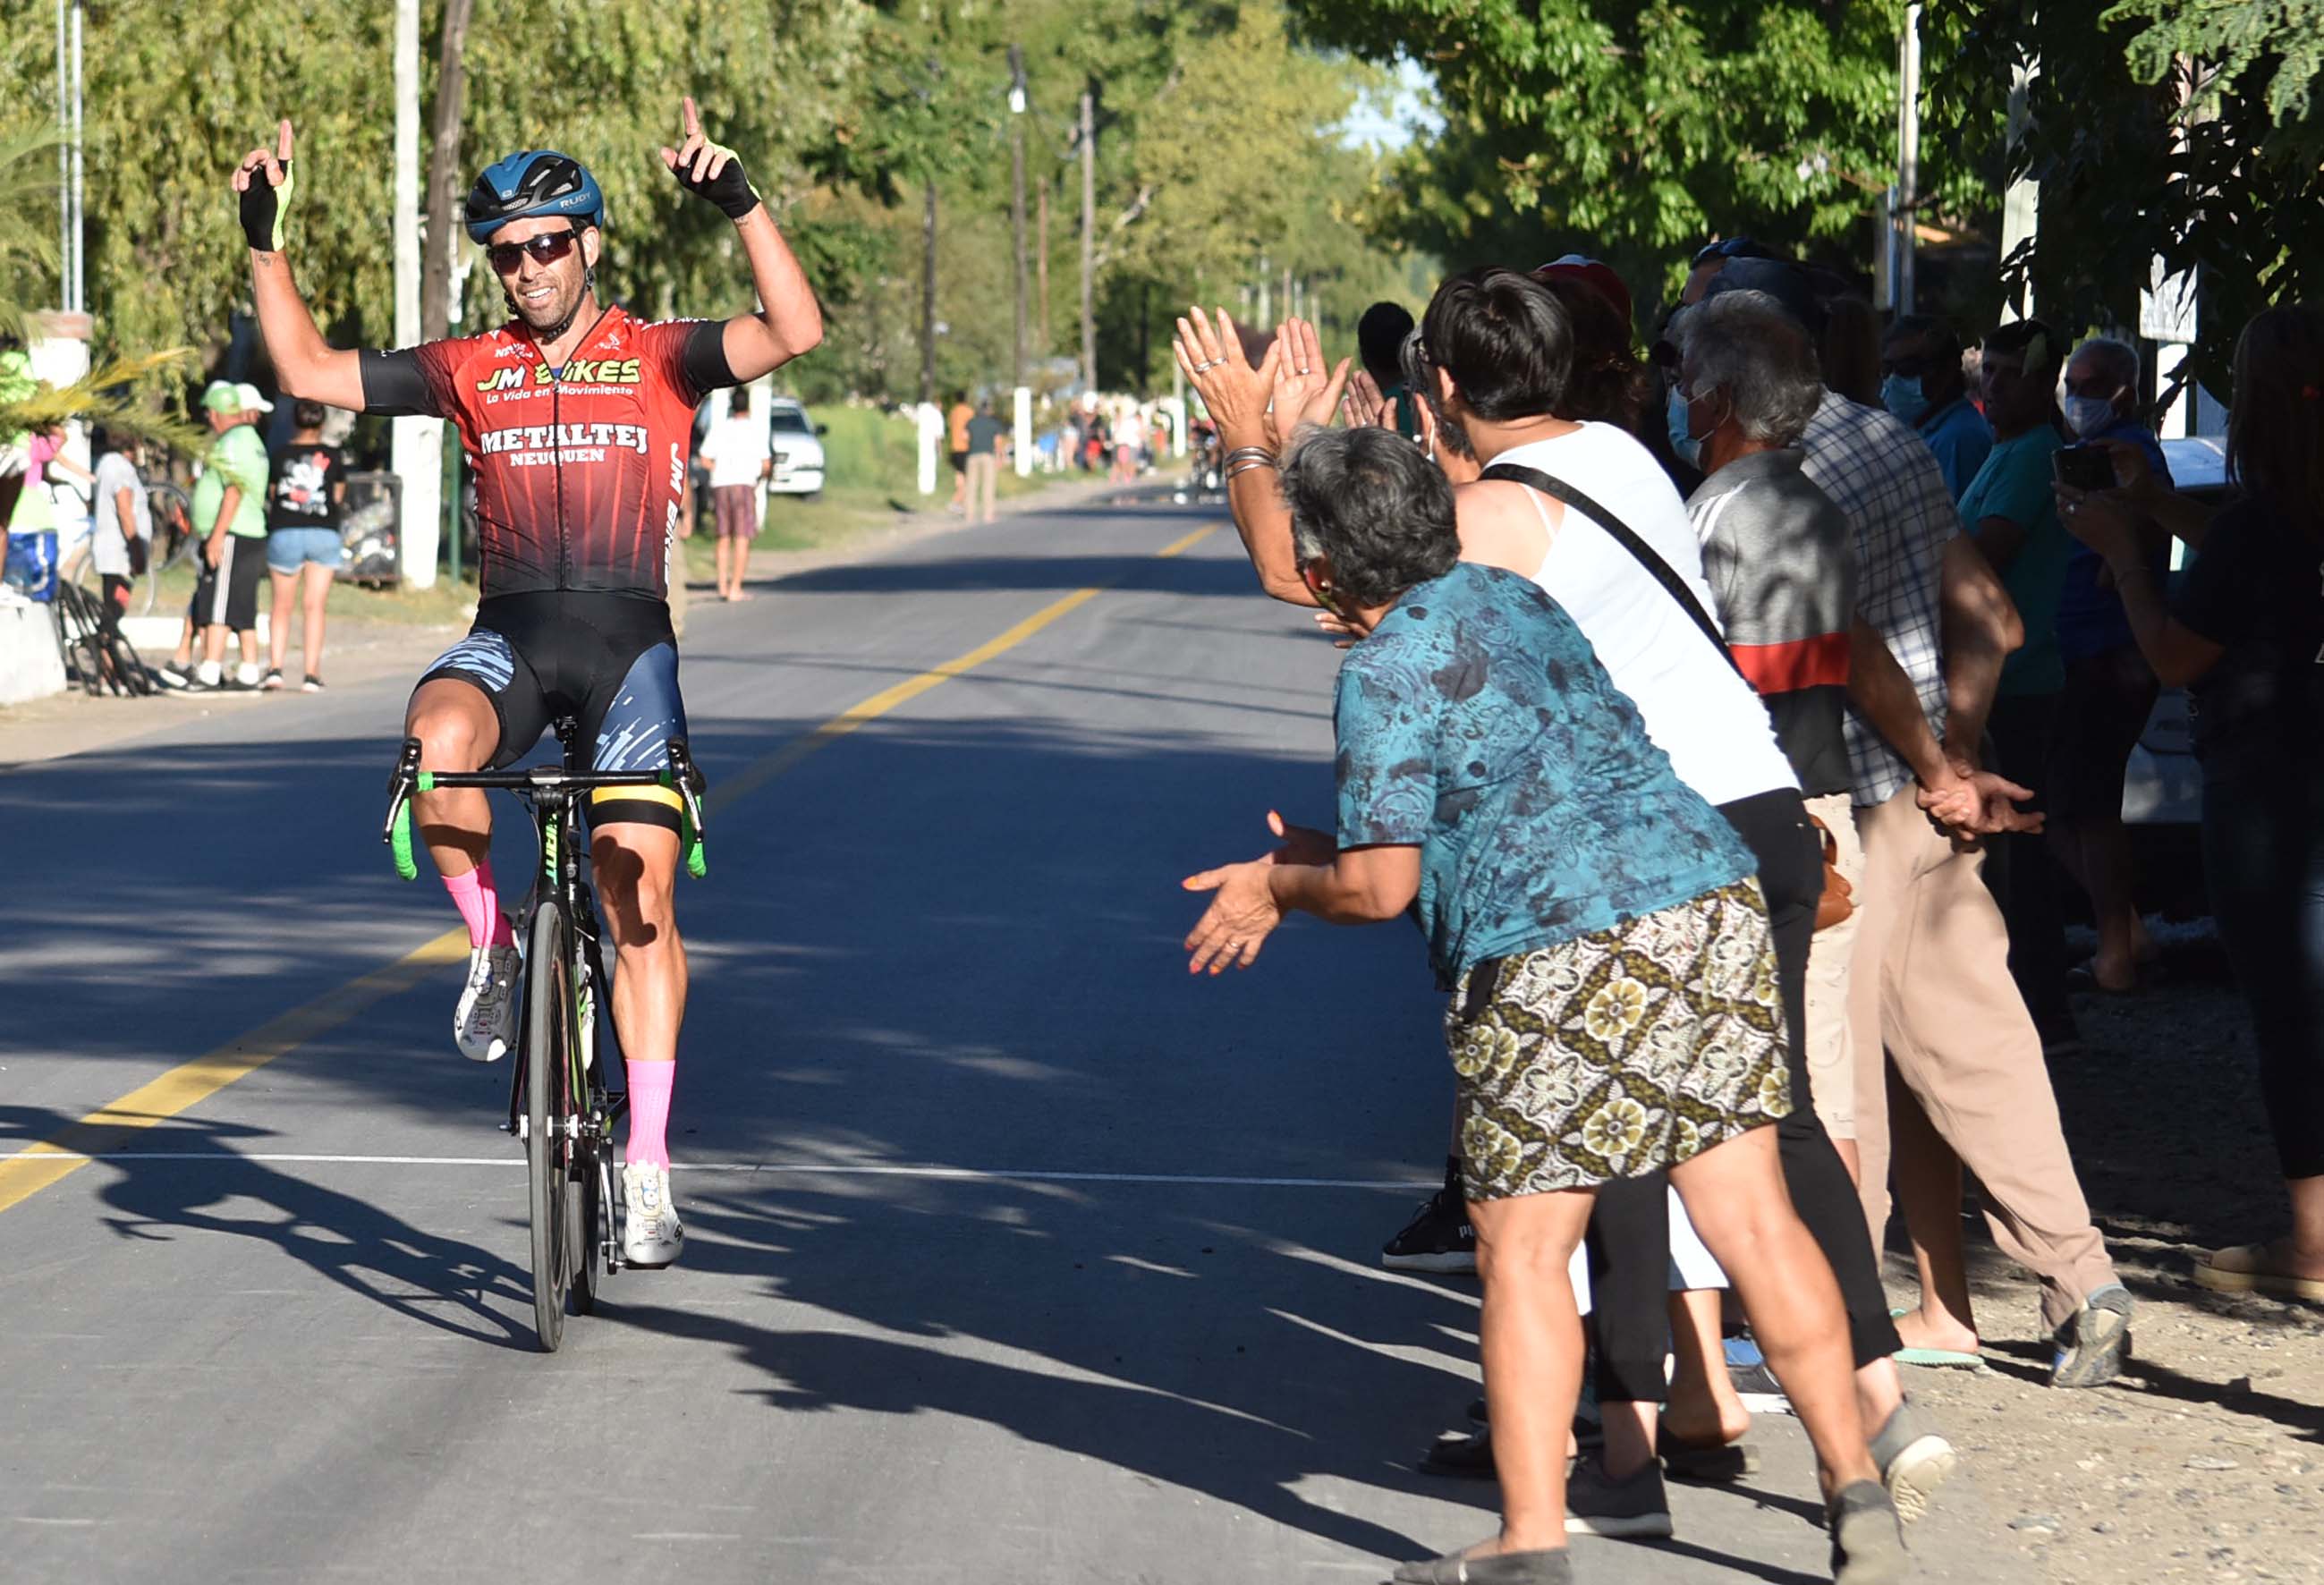 Roberto festeja llegando a la meta y el público aplaude su paso. Fotos: Jorge Tanos.